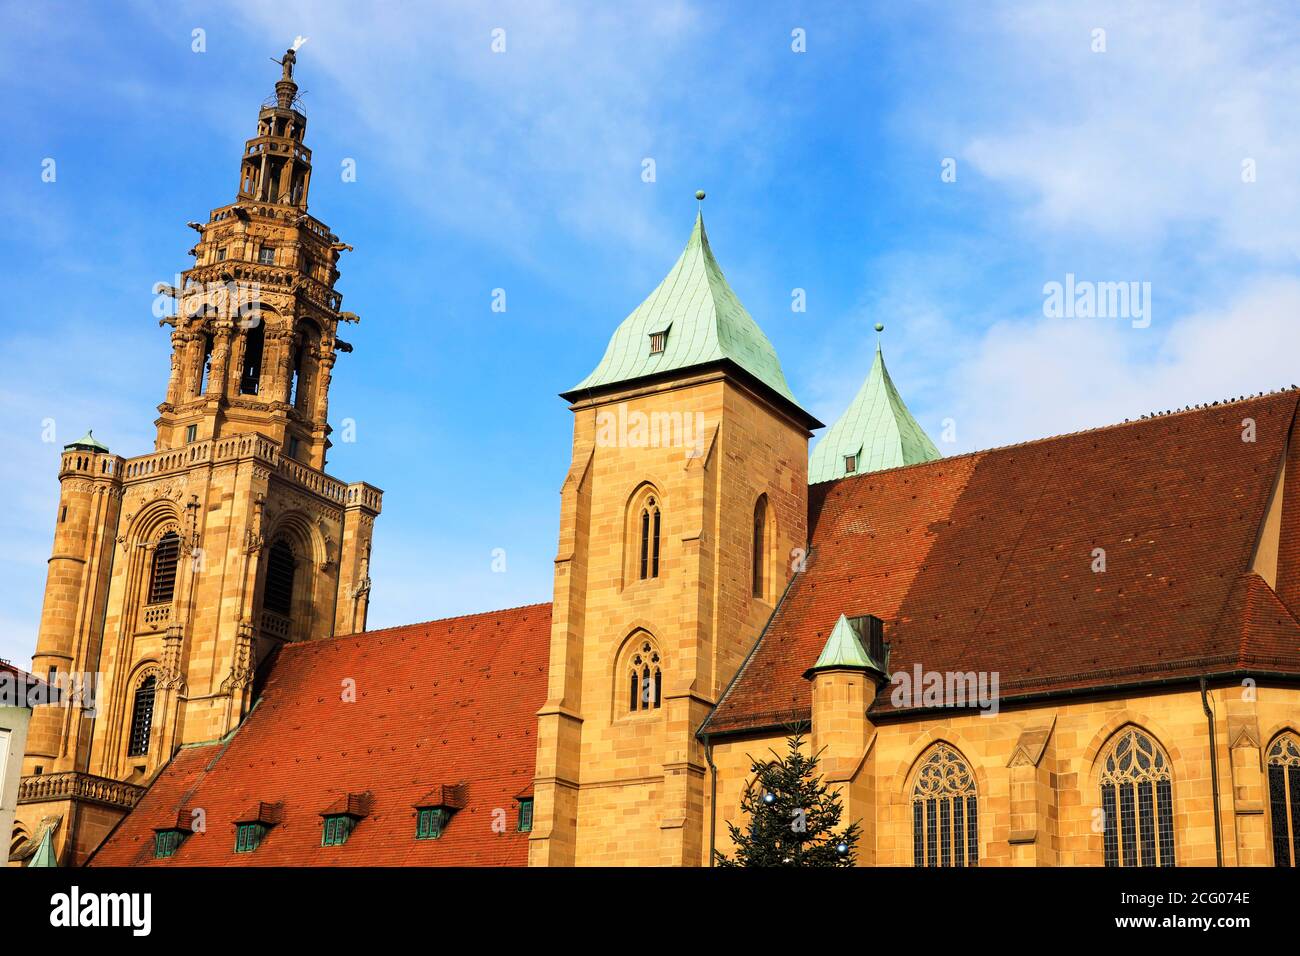 The historical God Tower, Götzenturm, in Heilbronn, Baden-Württemberg, Germany, Europe Stock Photo